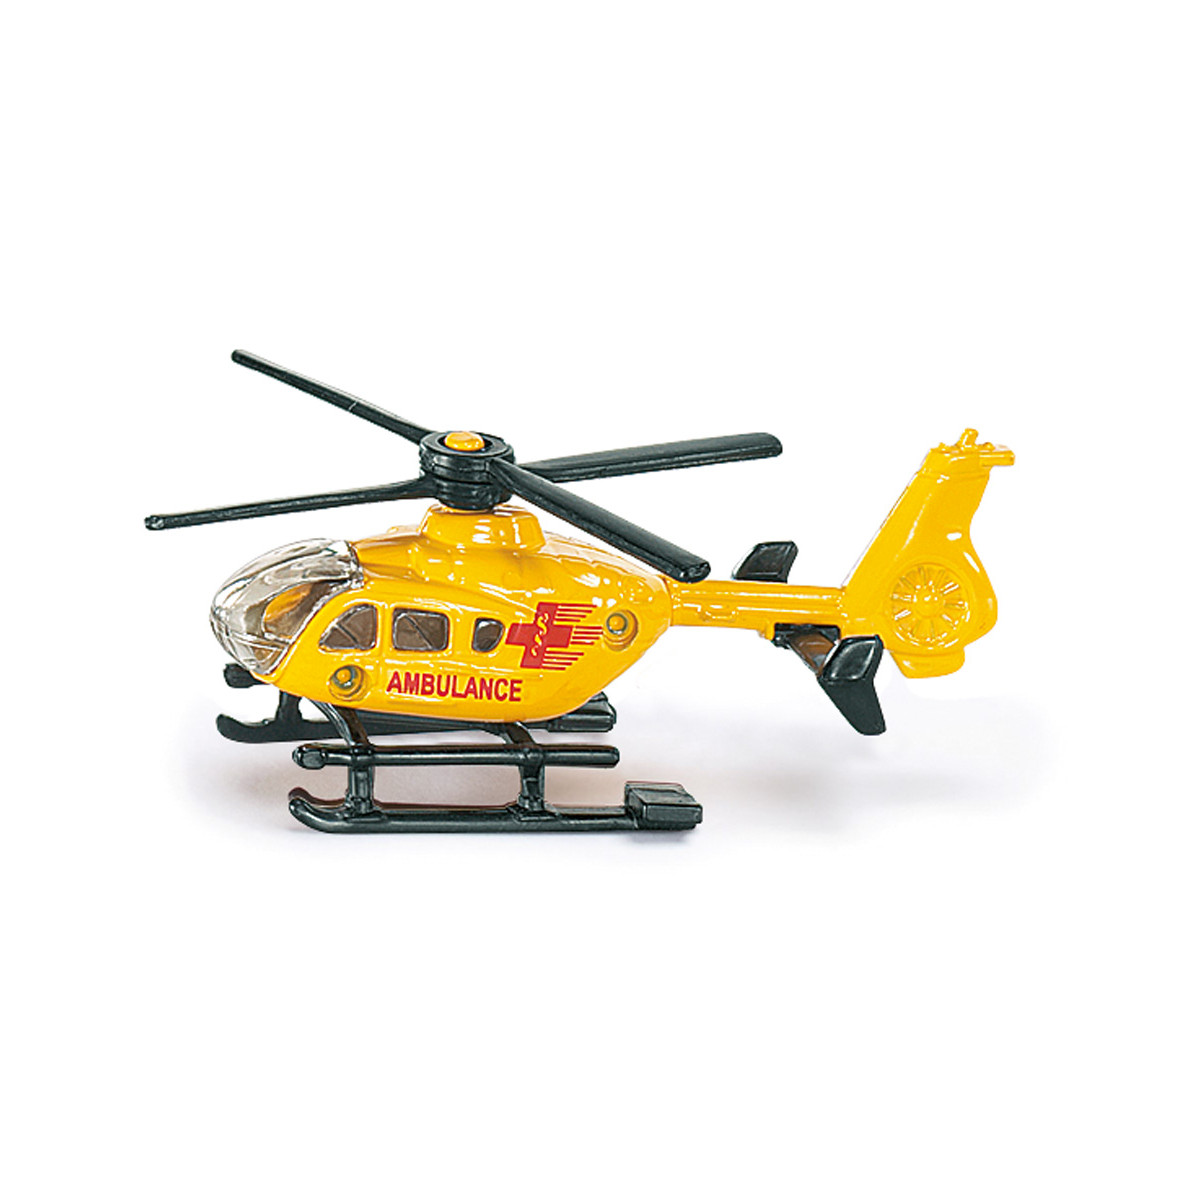 SIKU 856 Super Rettungs Hubschrauber, sortiert